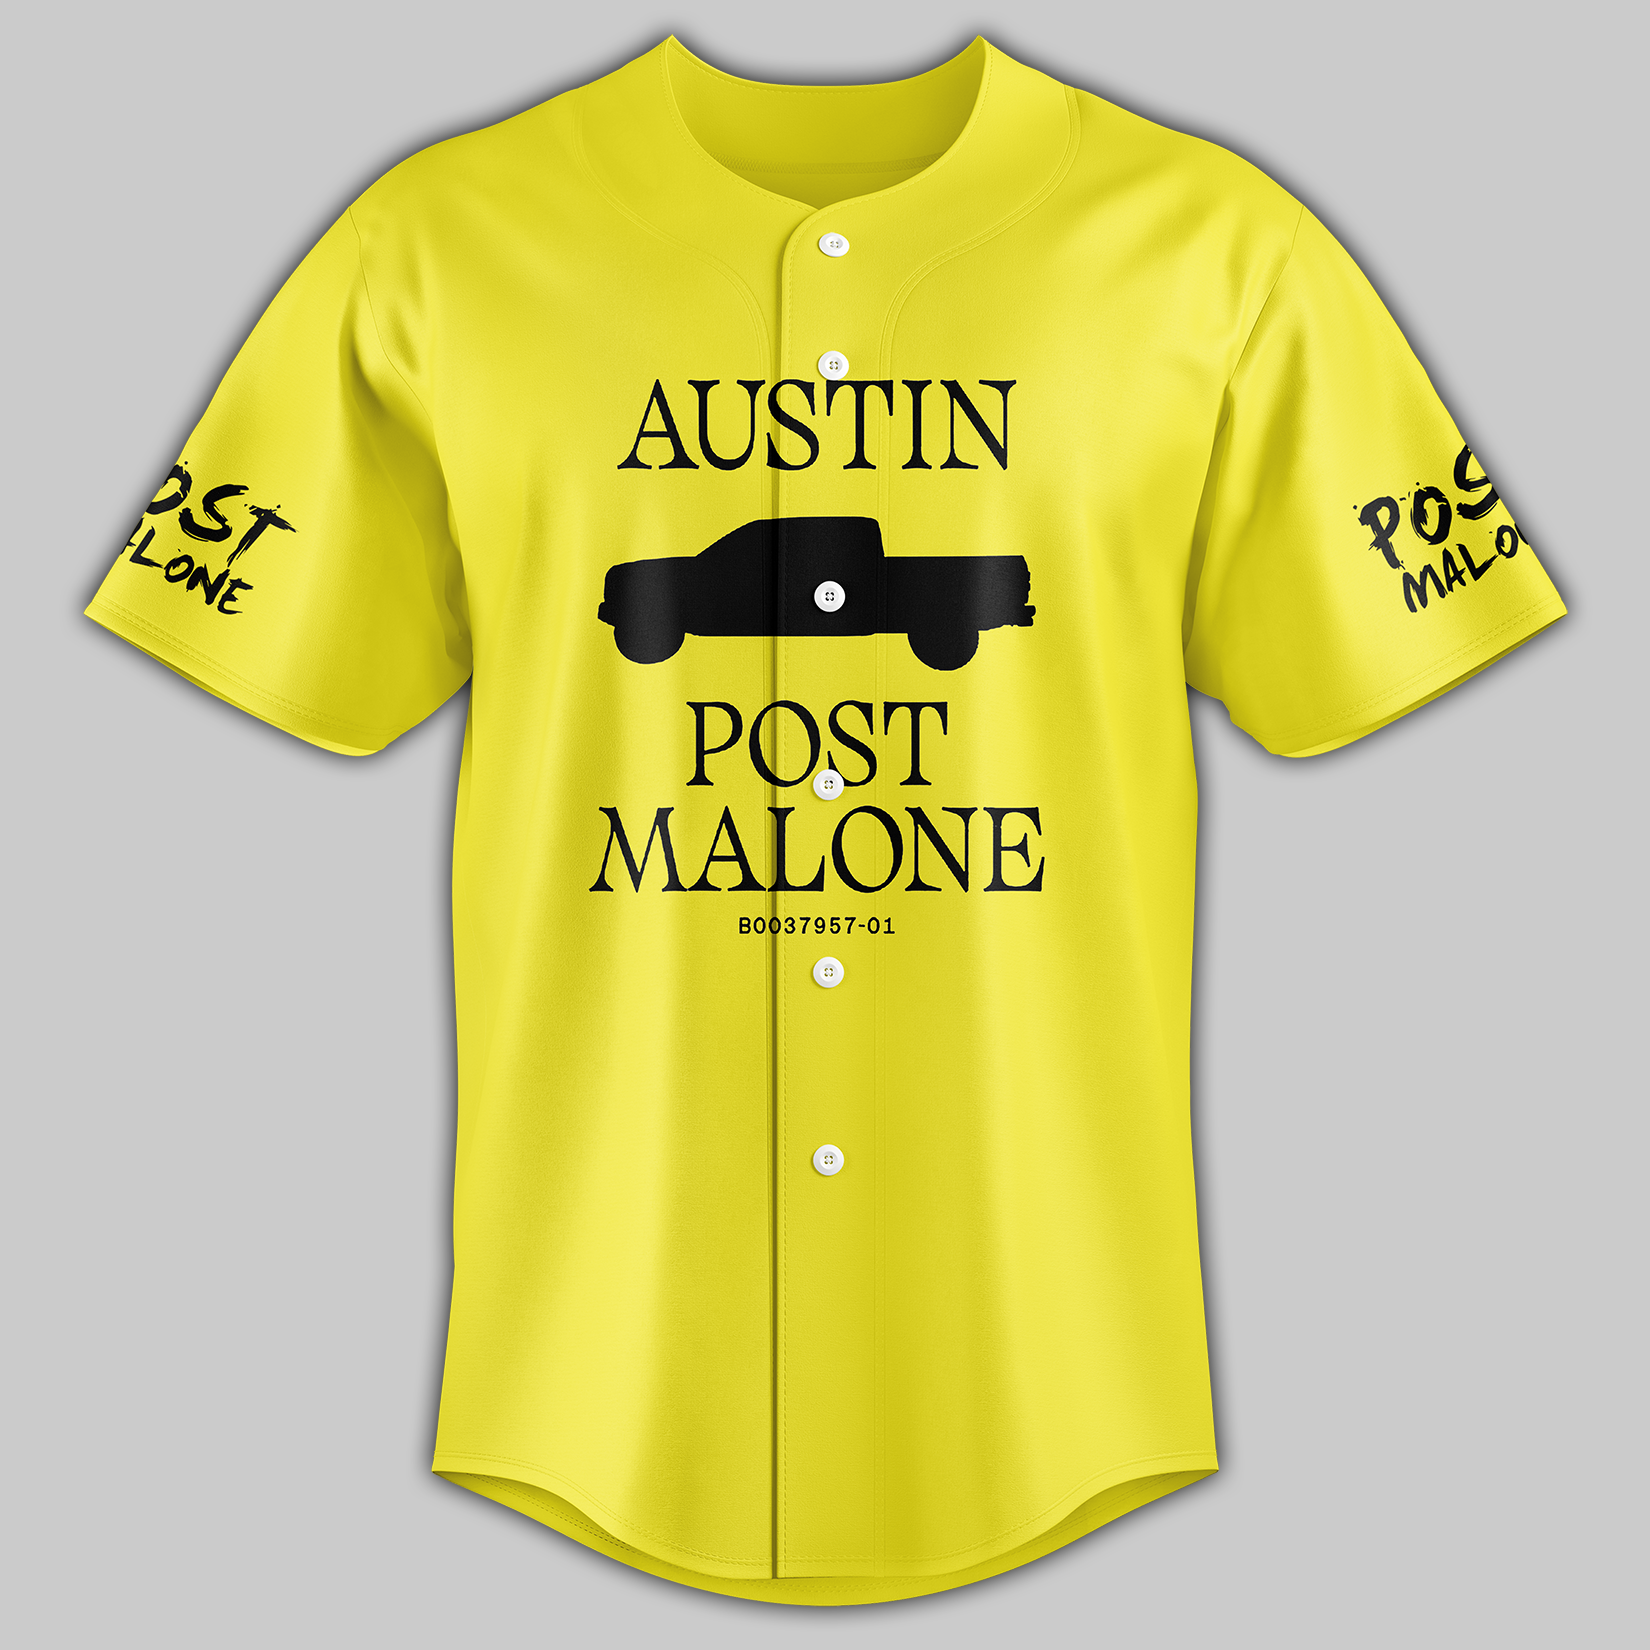 Austin Post Malone Baseball Jersey - Tagotee